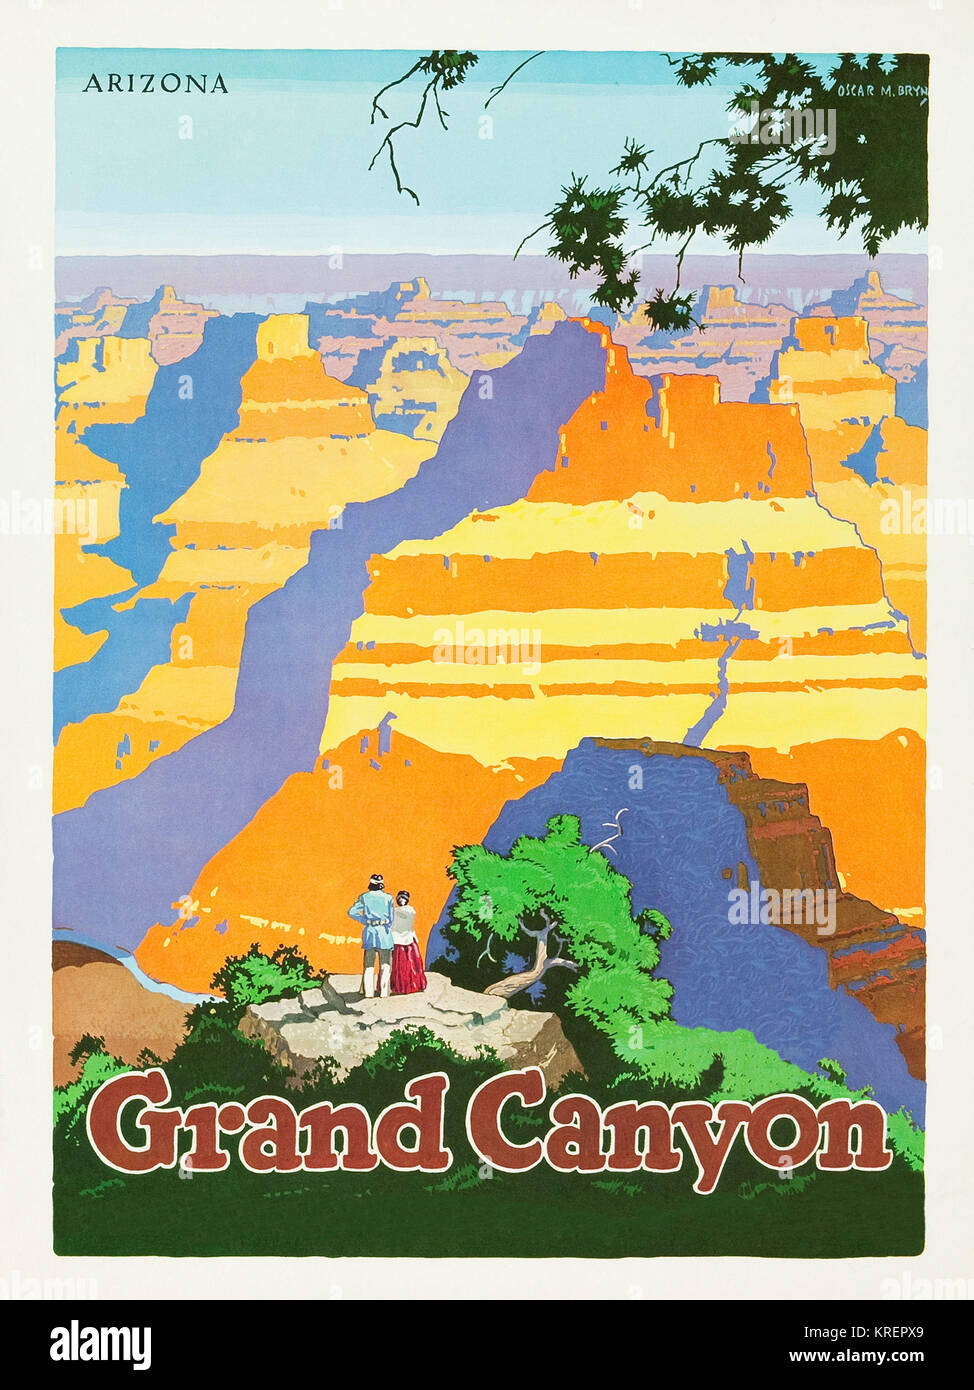 " Travel poster per promuovere il viaggio attraverso l'America per ferrovia, rilasciati negli anni cinquanta. Mostra il Grand Canyon in Arizona. Pittore originariamente da Oscar M. Bryn (1883 - 1967).". Foto Stock